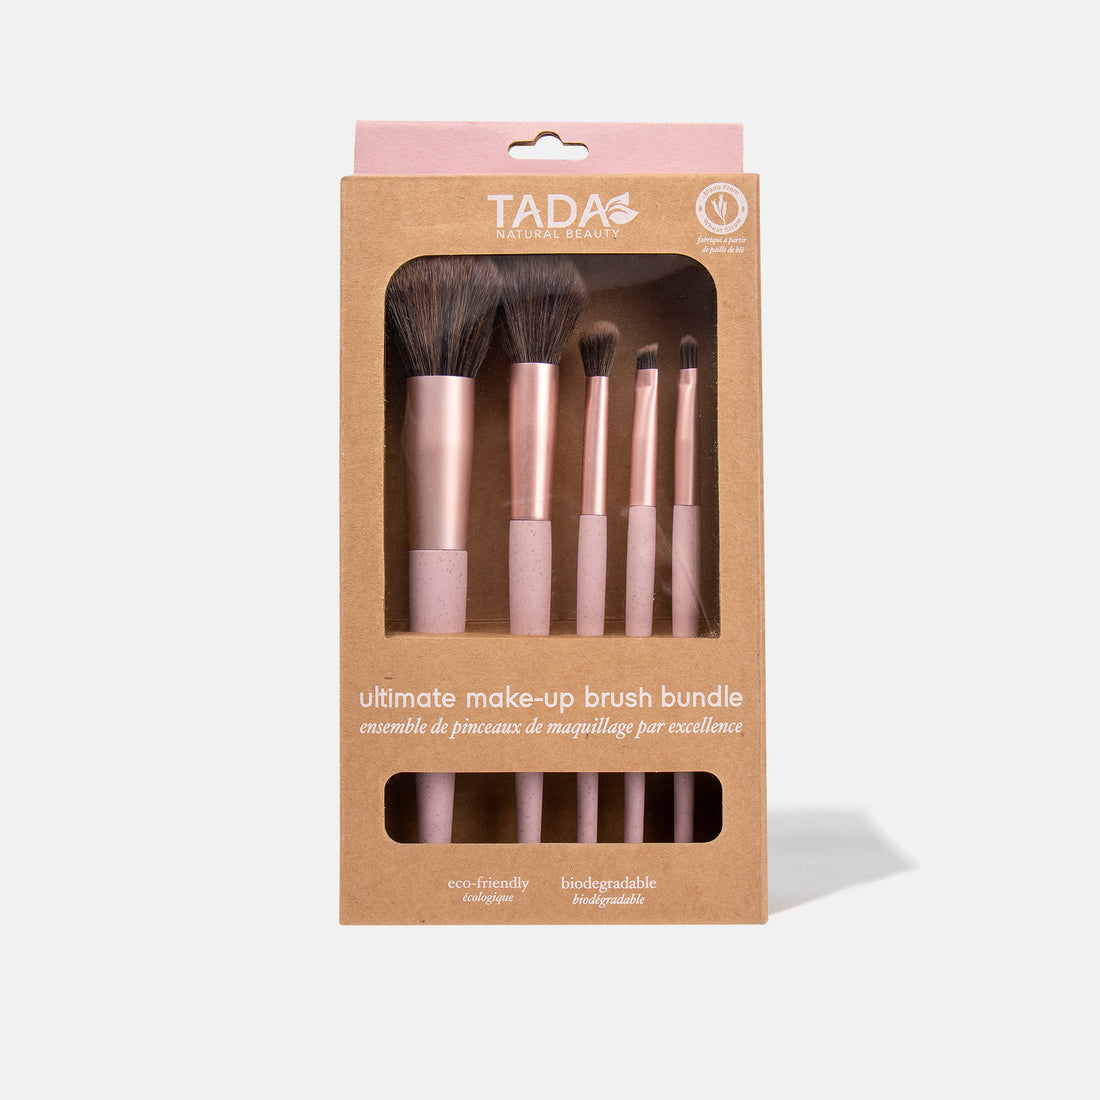 TADA Natural Beauty | Pink Ultimate Makeup Brush Bundle